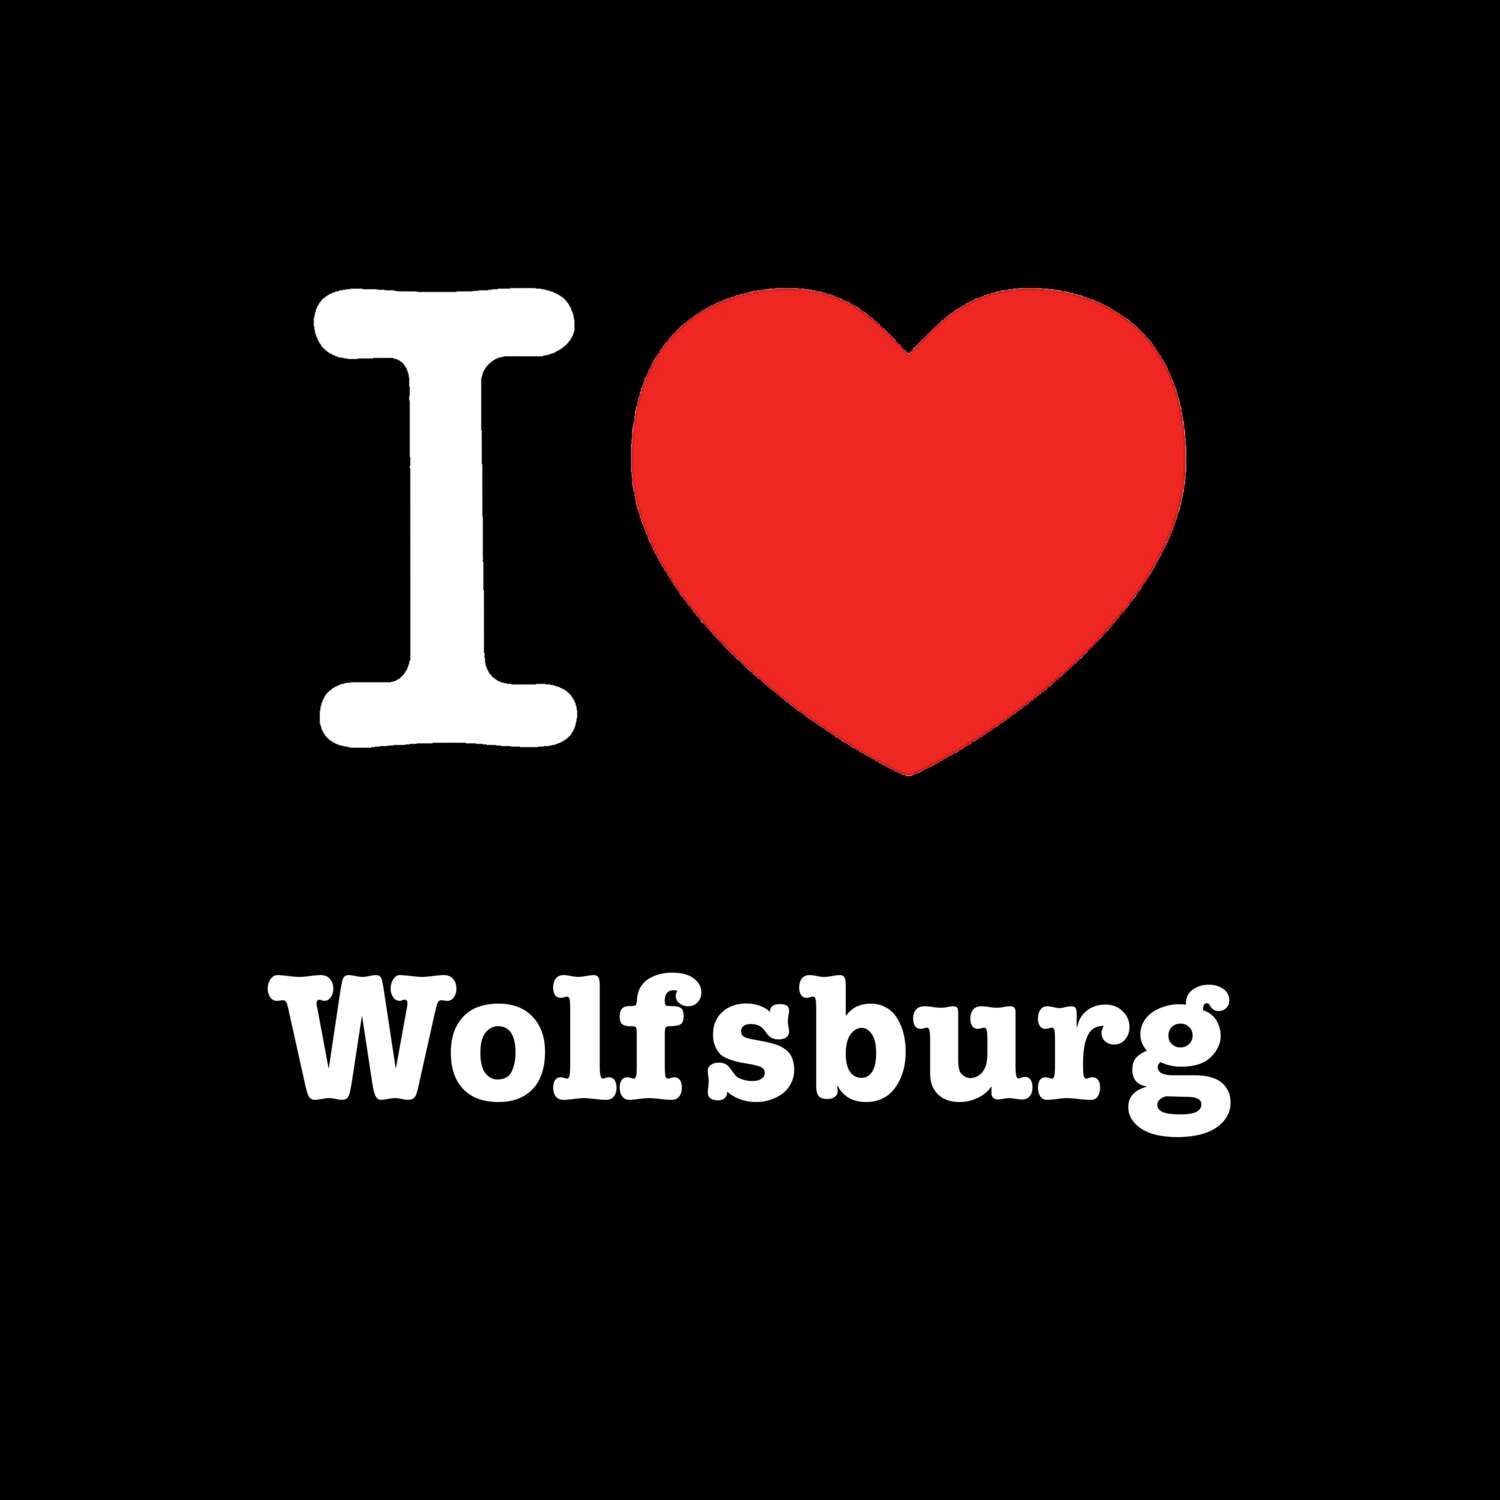 Wolfsburg T-Shirt »I love«